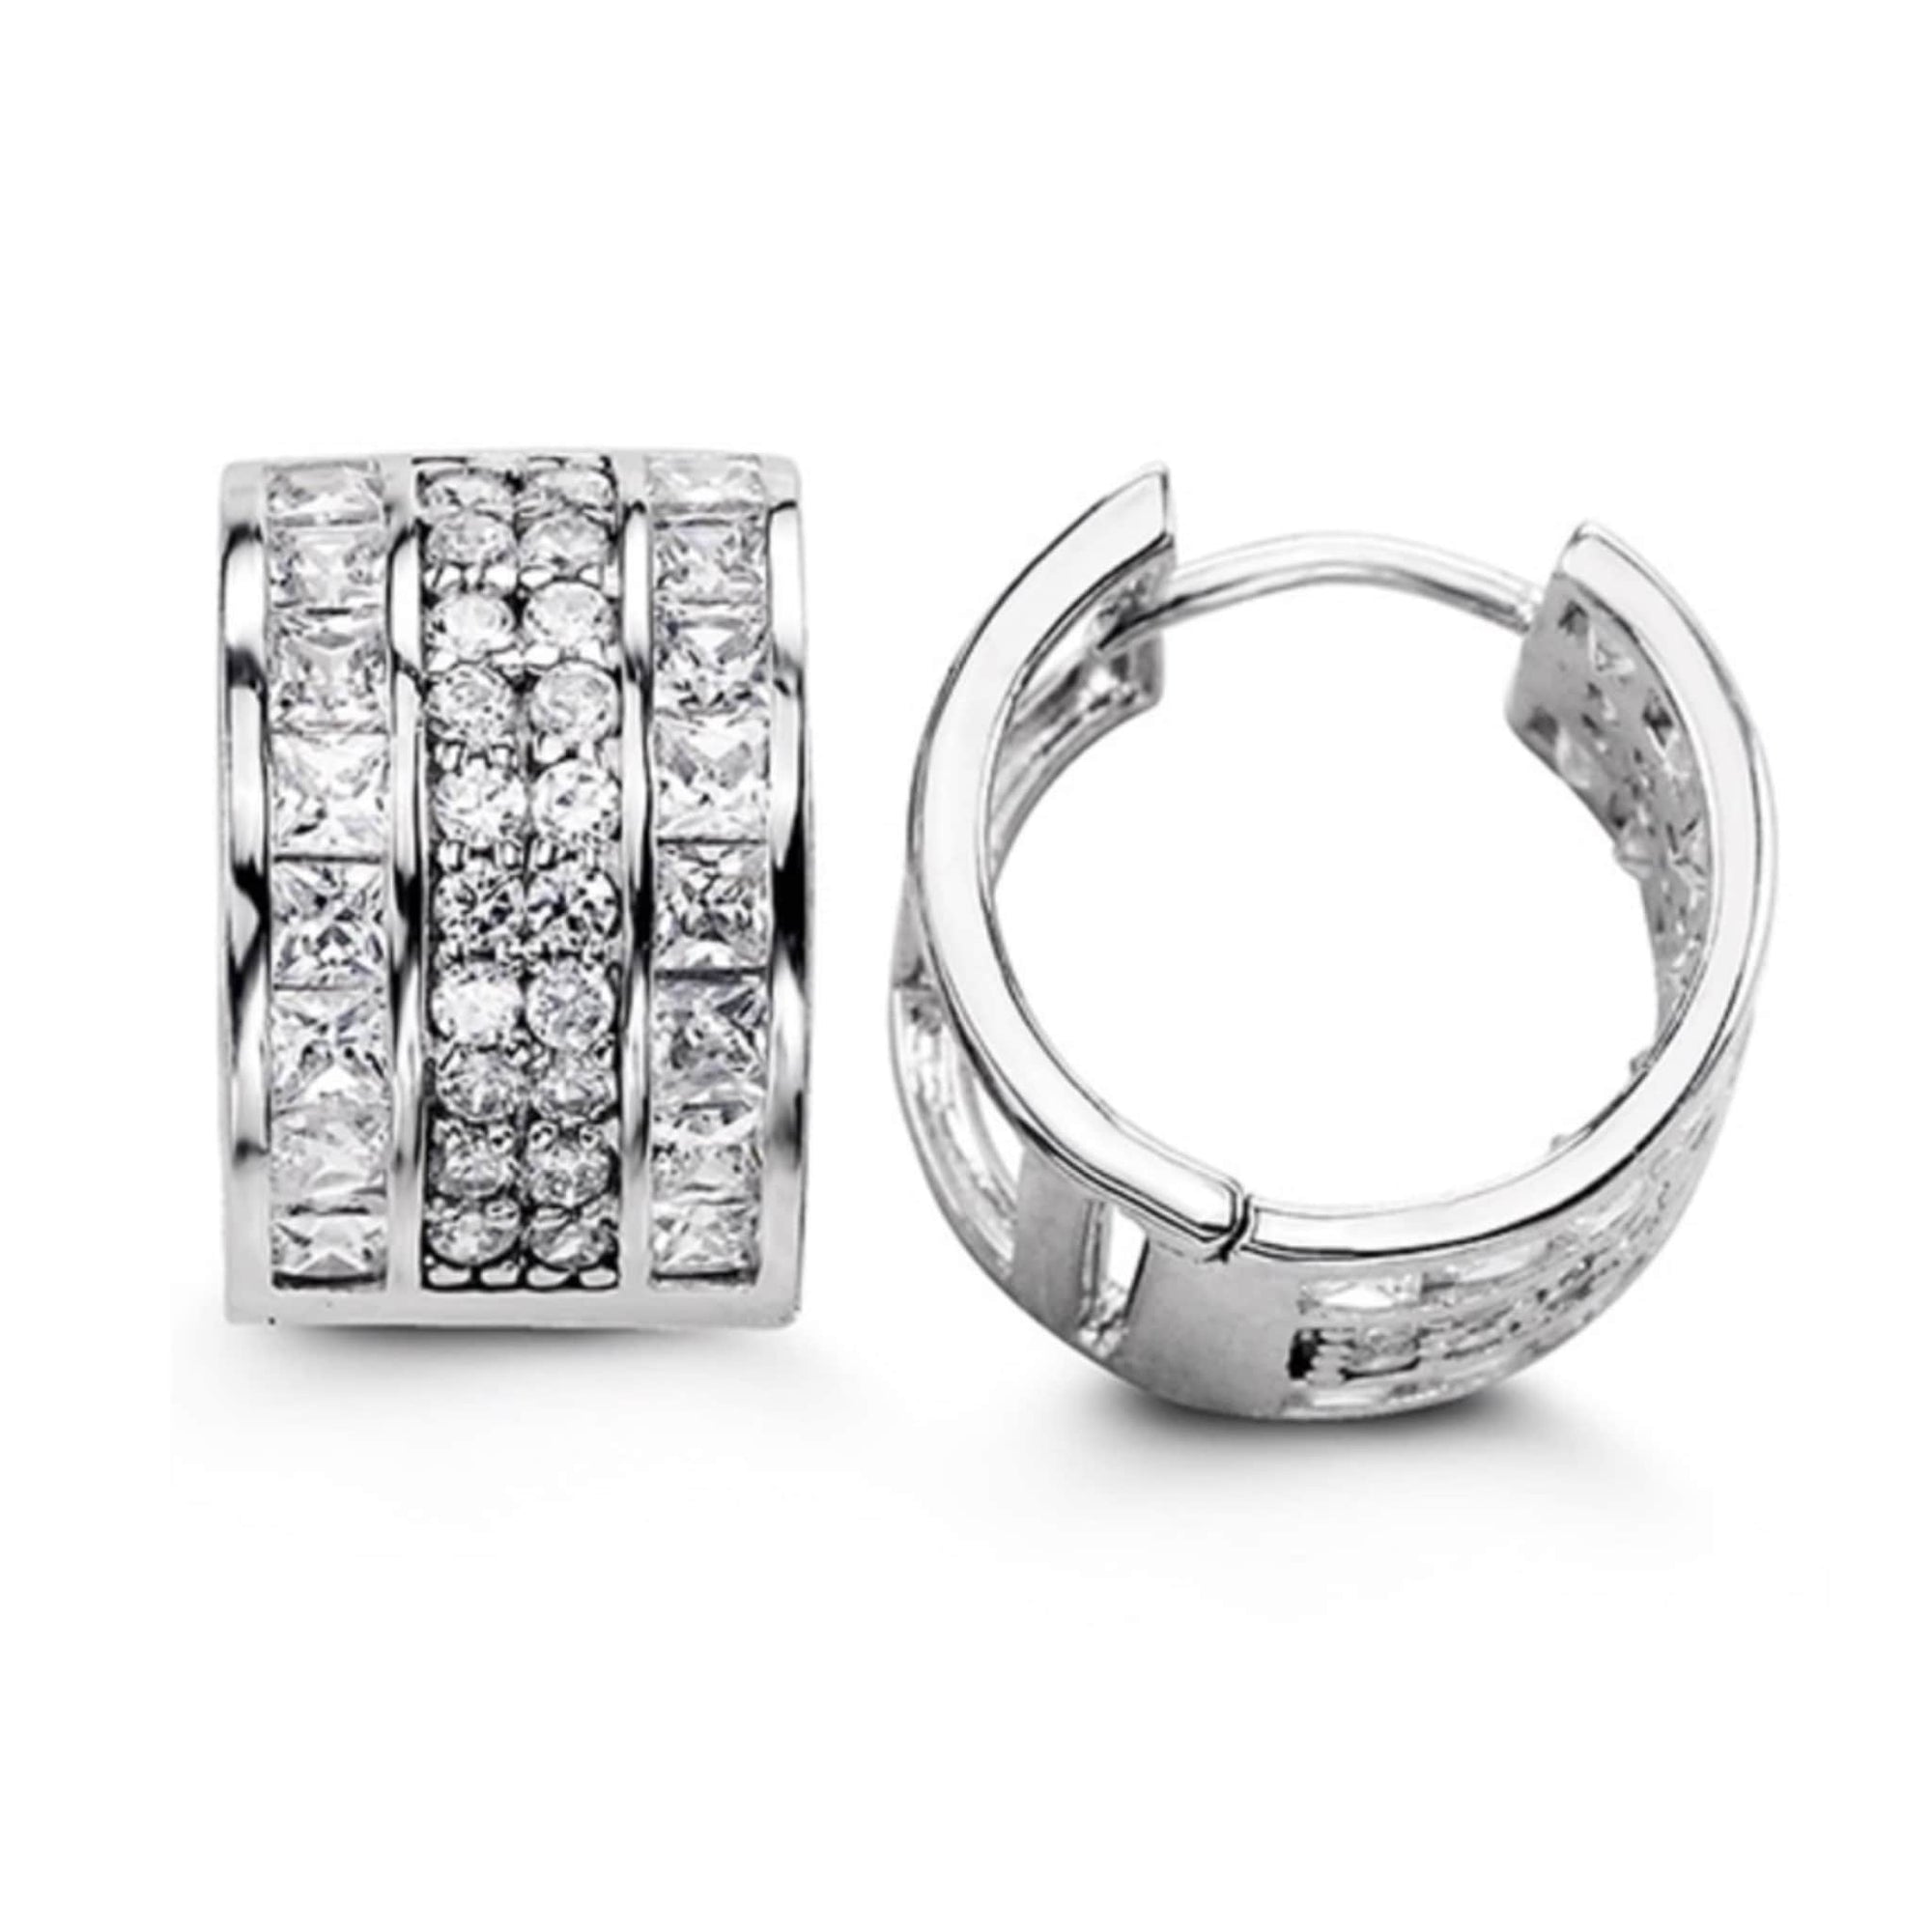 15mm Silver Round & Princess CZ Huggie Hoop Earrings at Arman's Jewellers